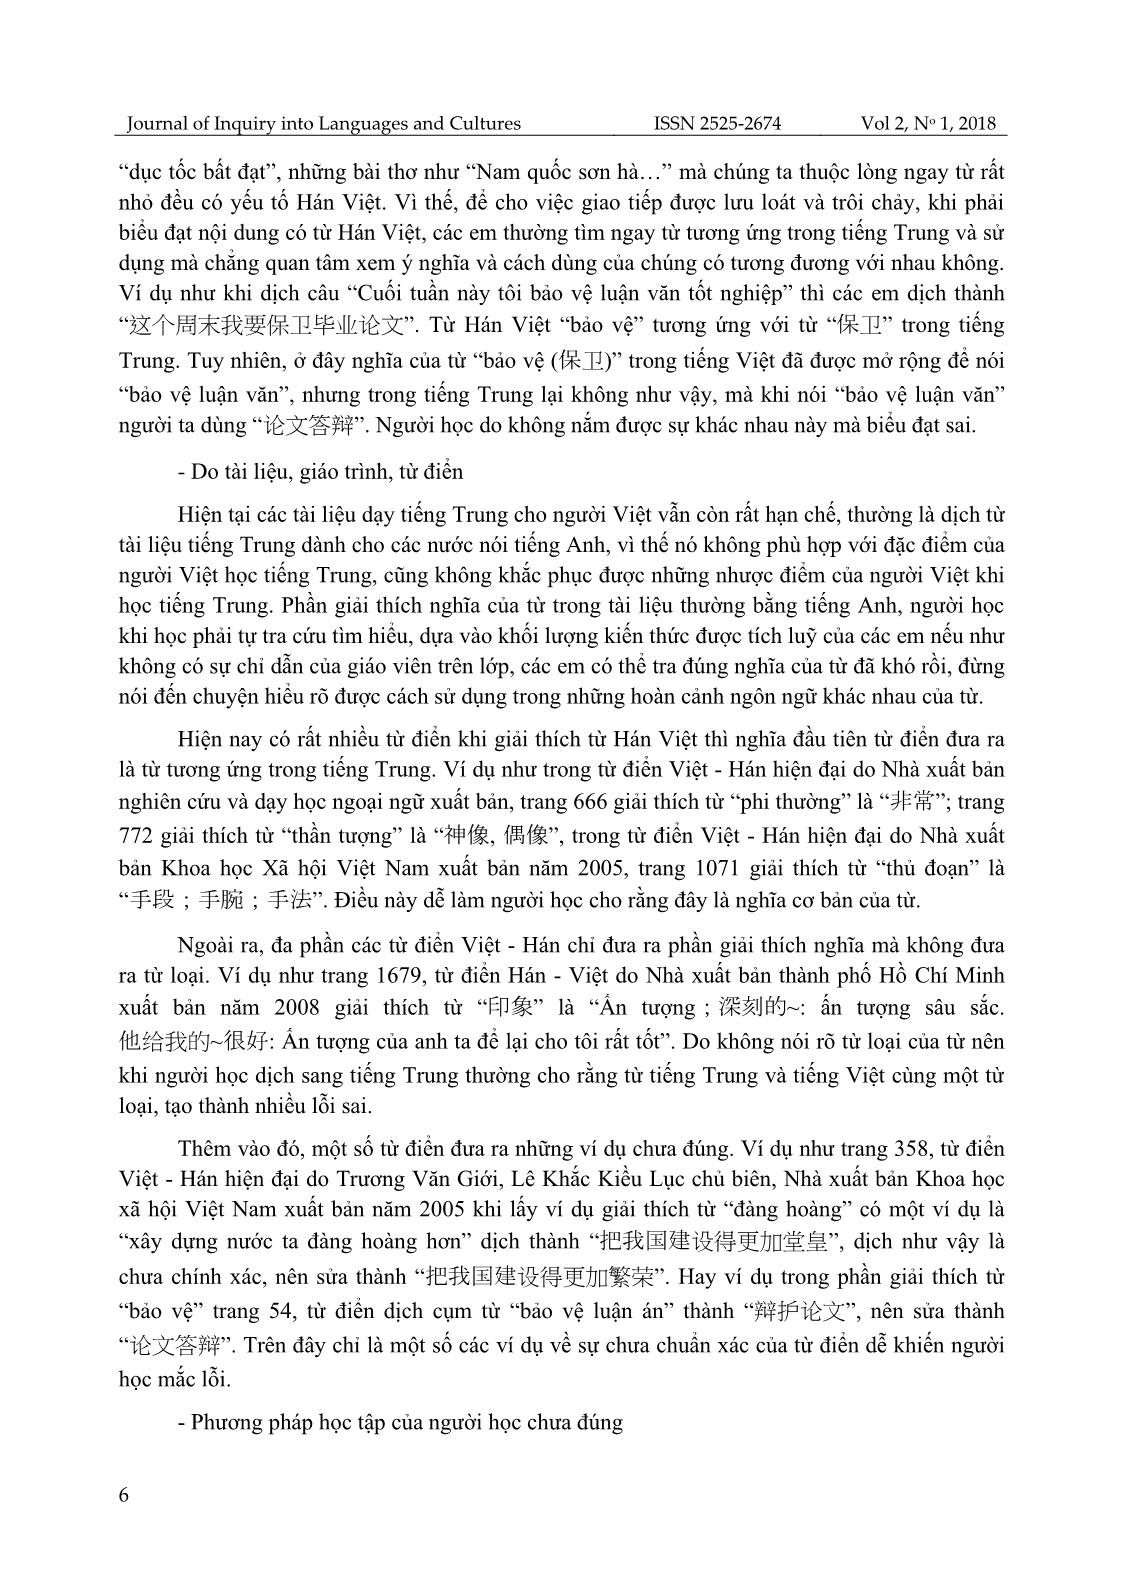 Khảo sát lỗi sai của sinh viên khoa Ngoại ngữ, Đại học Thái Nguyên khi dịch trực tiếp từ Hán Việt sang tiếng Trung và giải pháp khắc phục trang 6